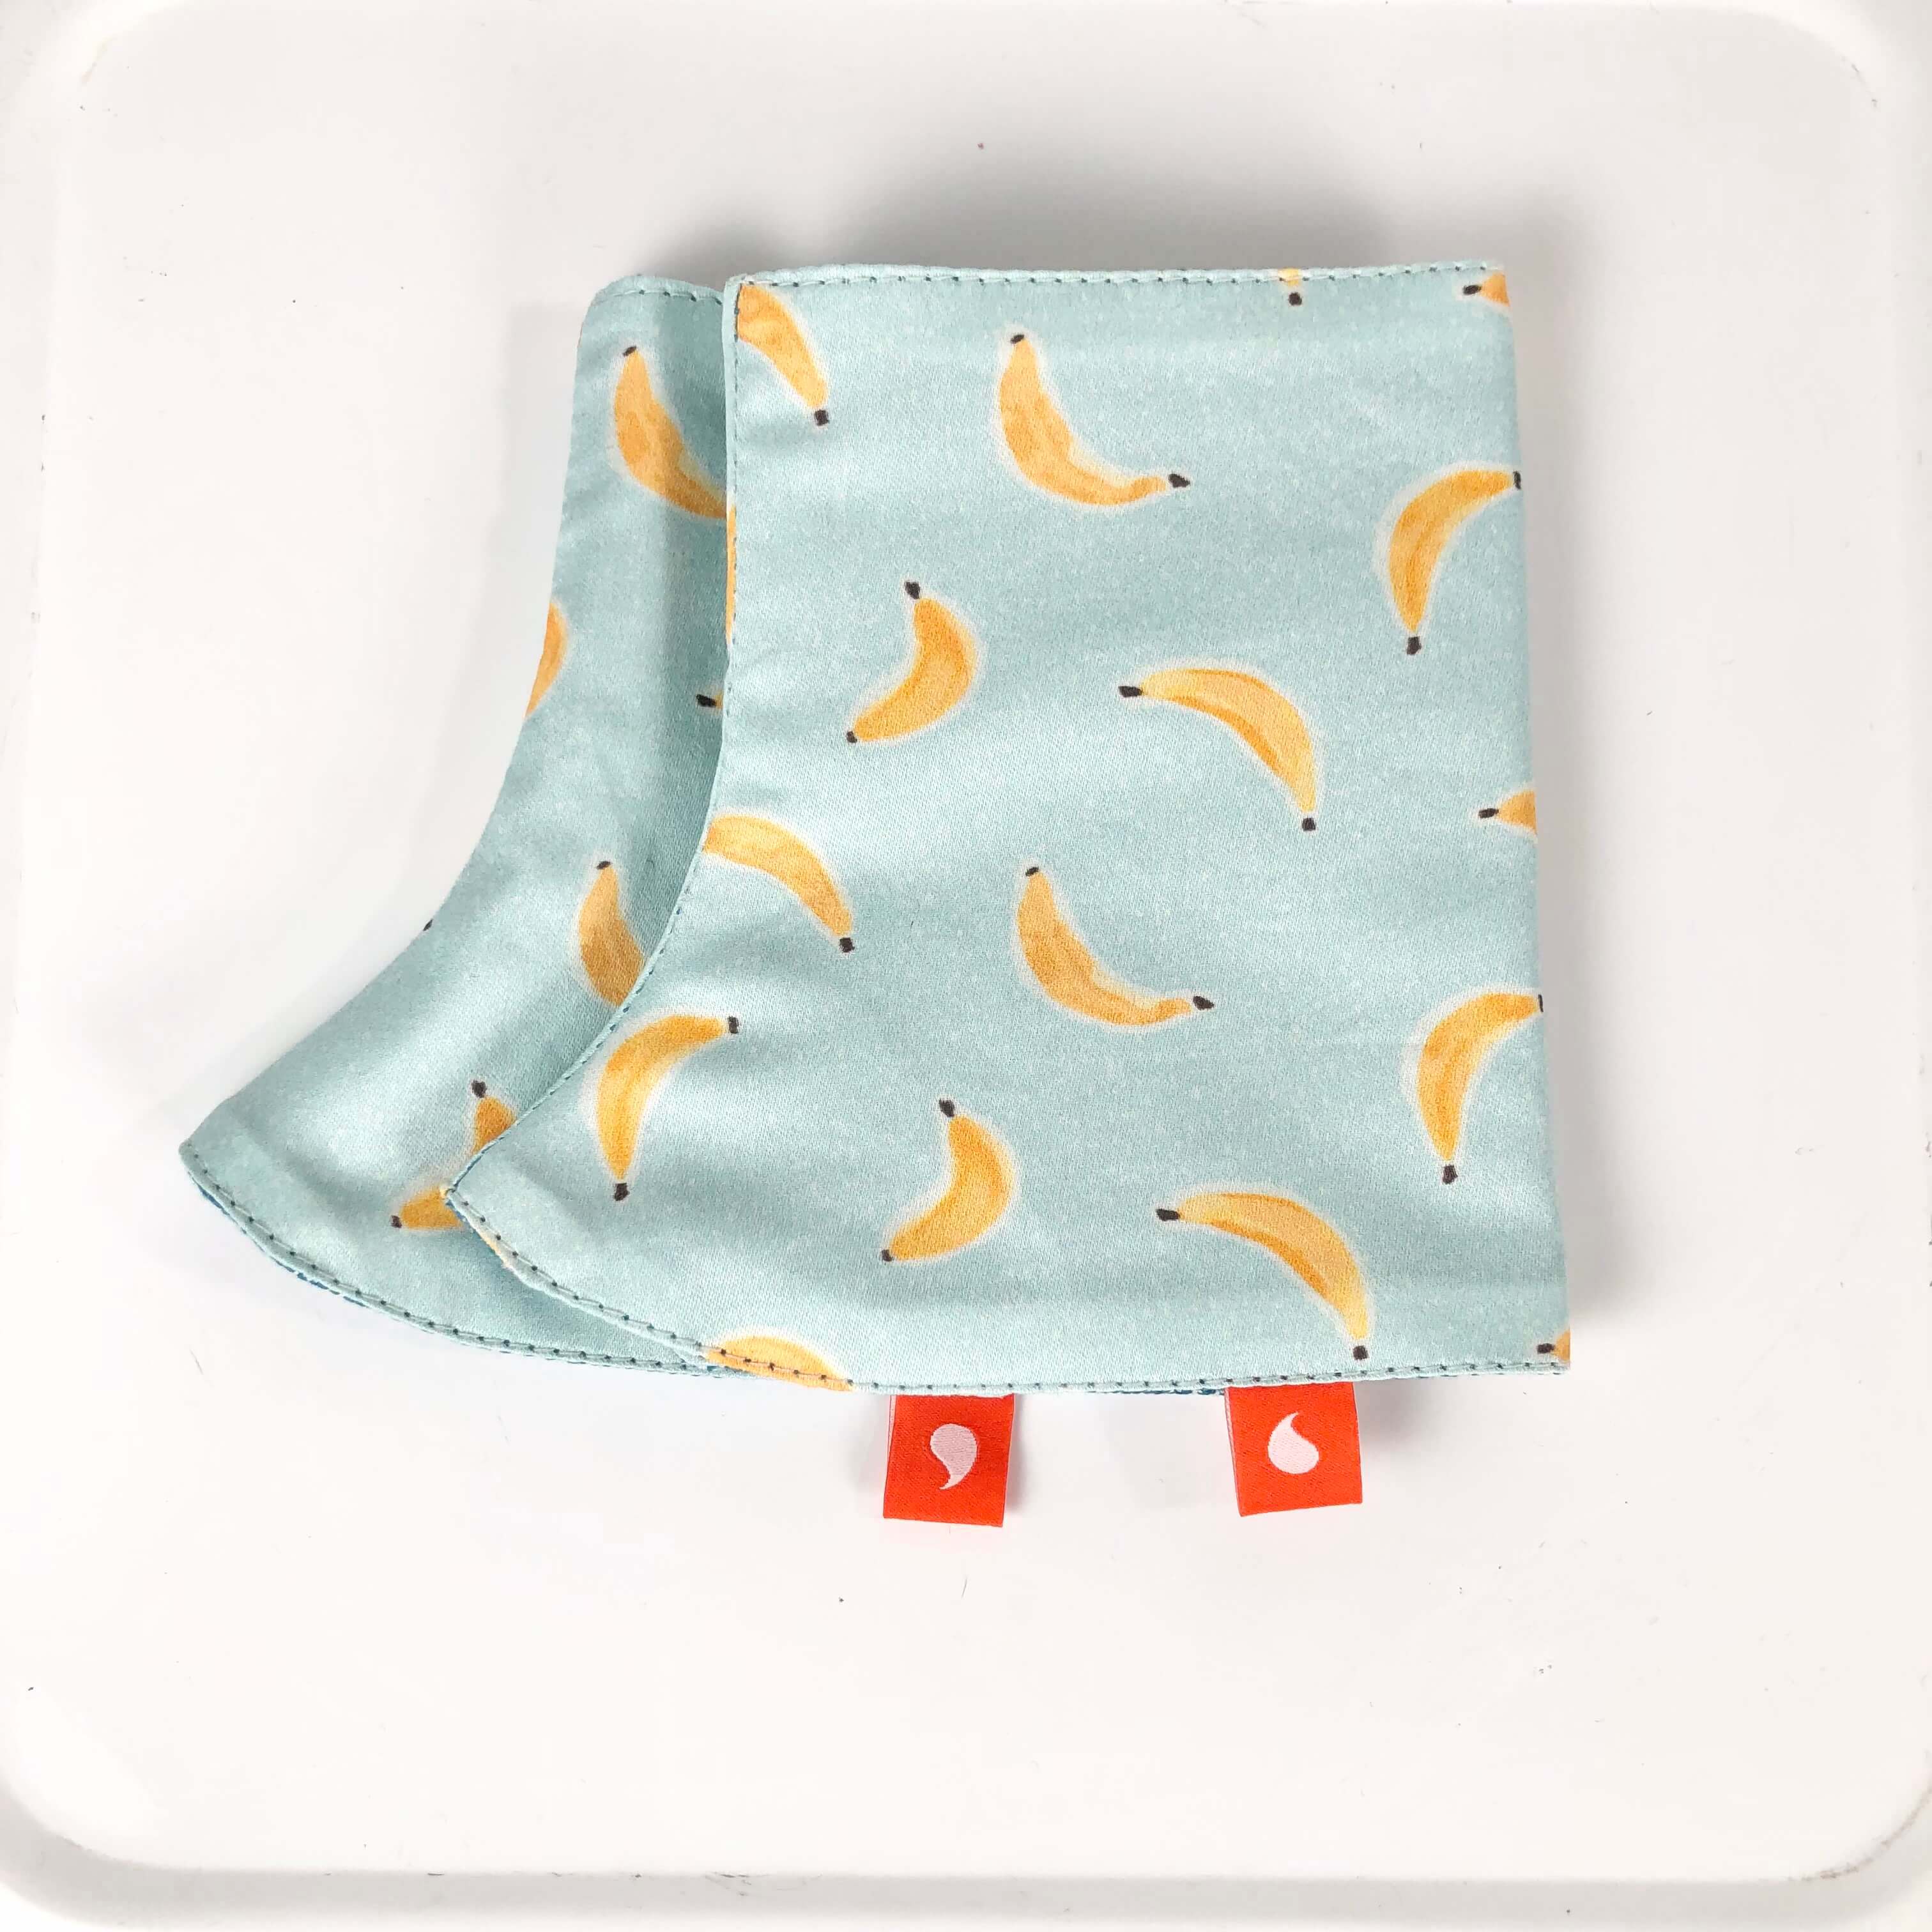 Protège de bretelles pour porte-bébé. Coton biologique, tissu d'écharpe bleu chiné, imprimé petites banane sur fond bleu ciel. Fabriqué en France.